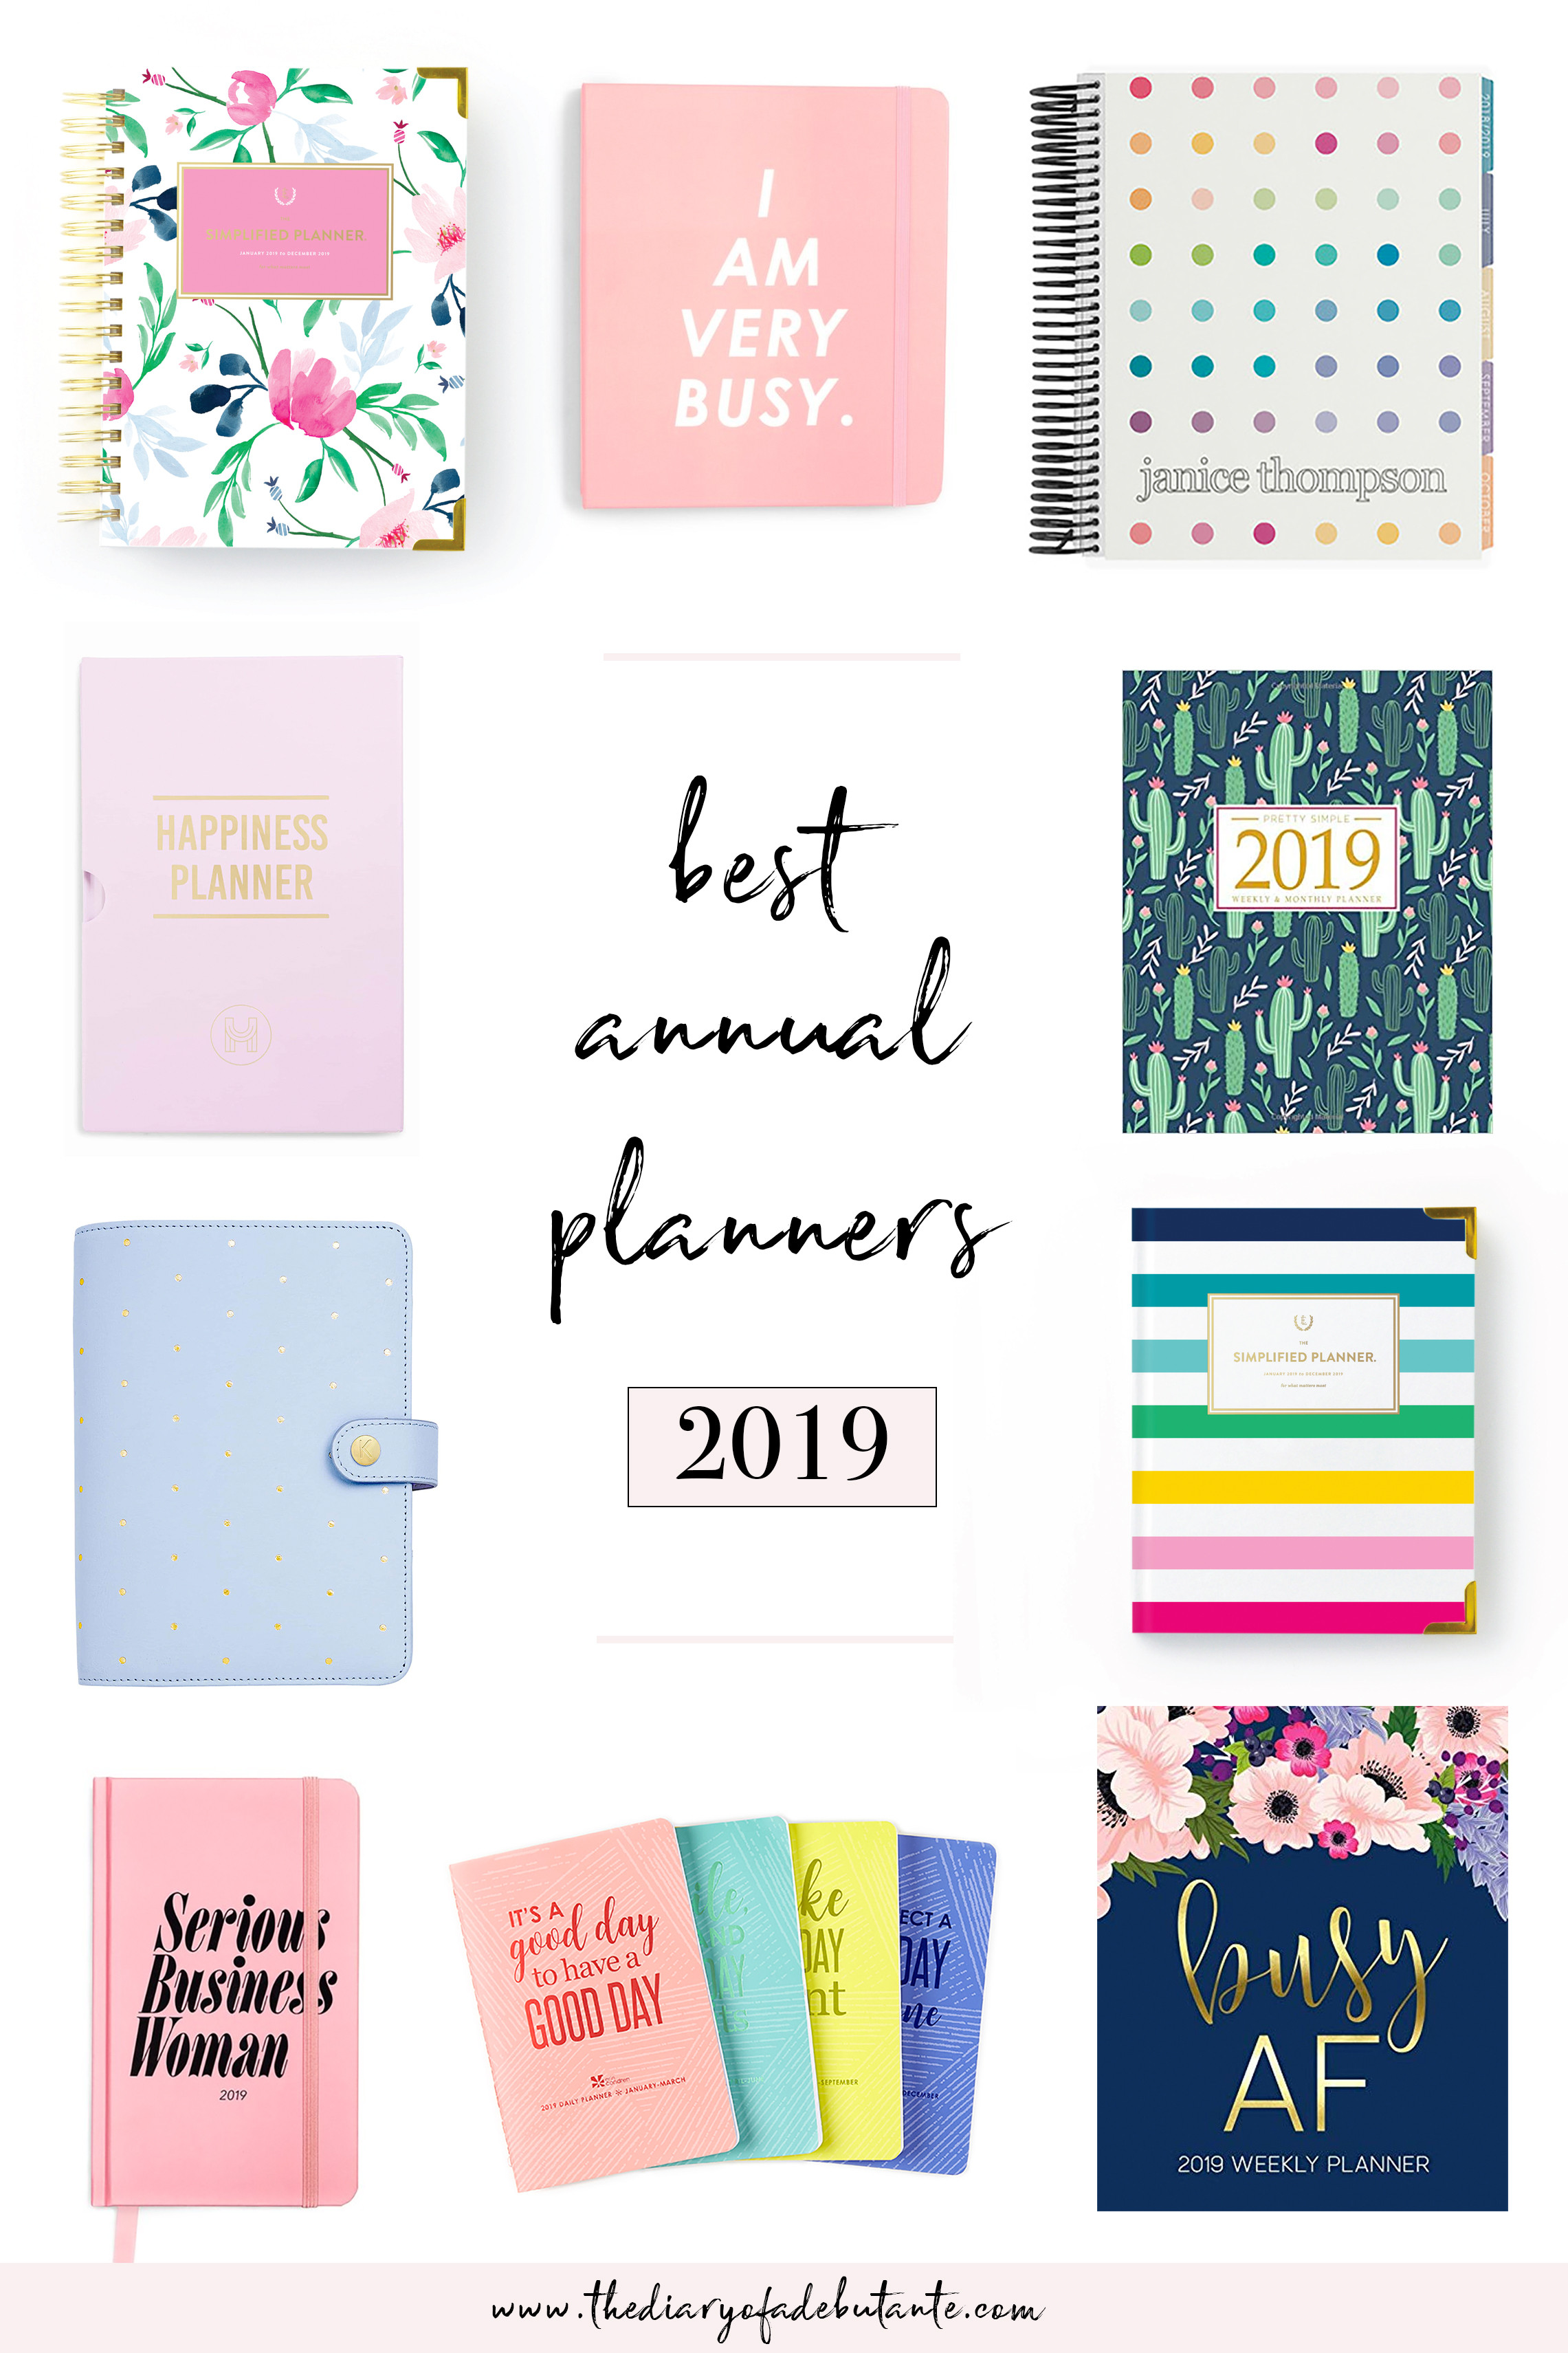 Best Planner Organizer
 Best Planners for Working Women 2019 Annual Planner Round Up